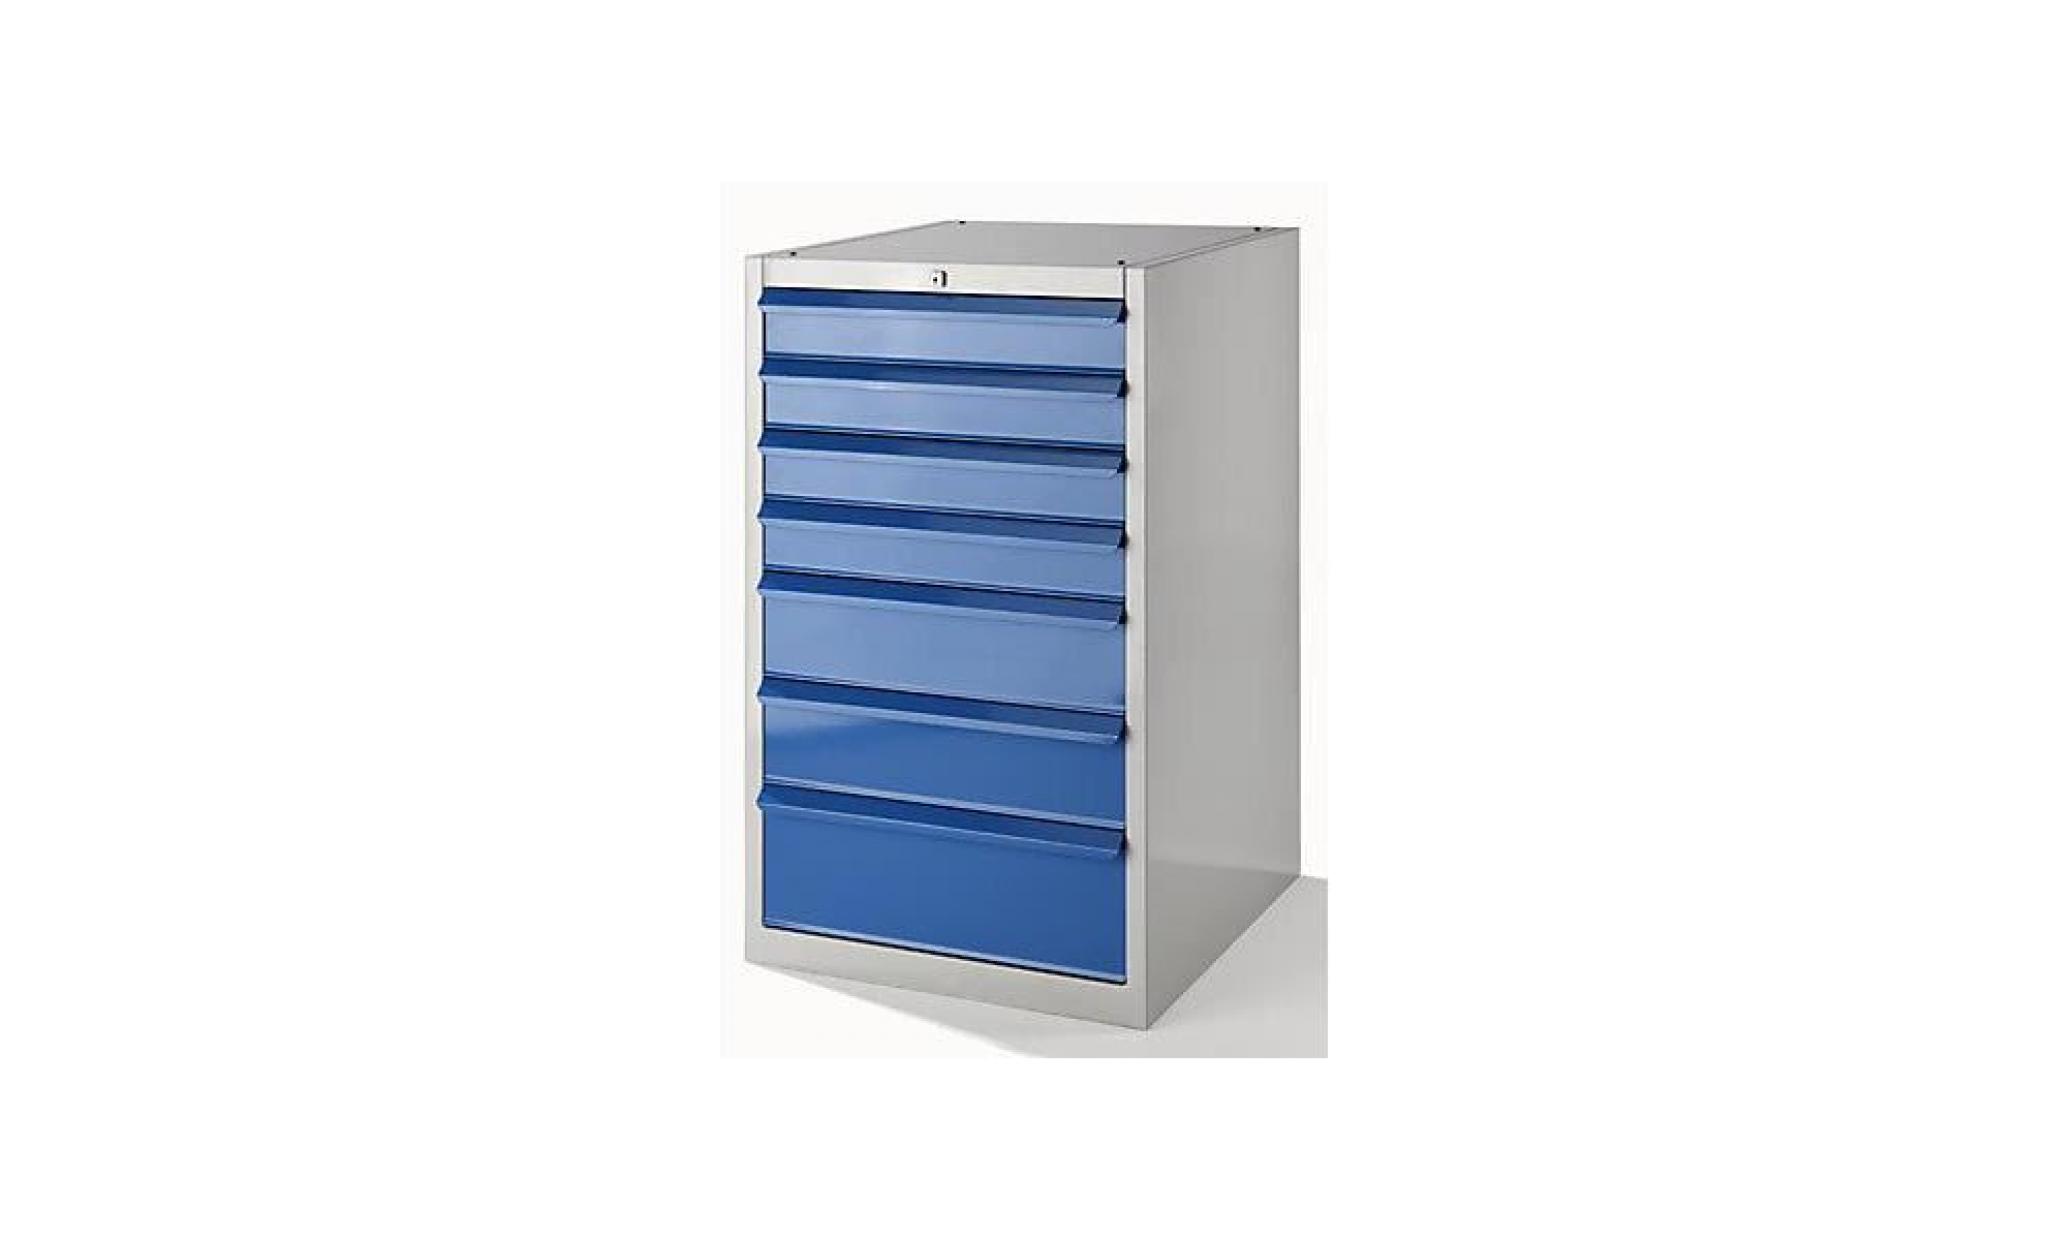 quipo armoire à outils, l x p 600 x 600 mm   hauteur 800 mm, 2 tiroirs, 1 porte   gris clair / bleu clair   armoire à outils armoire